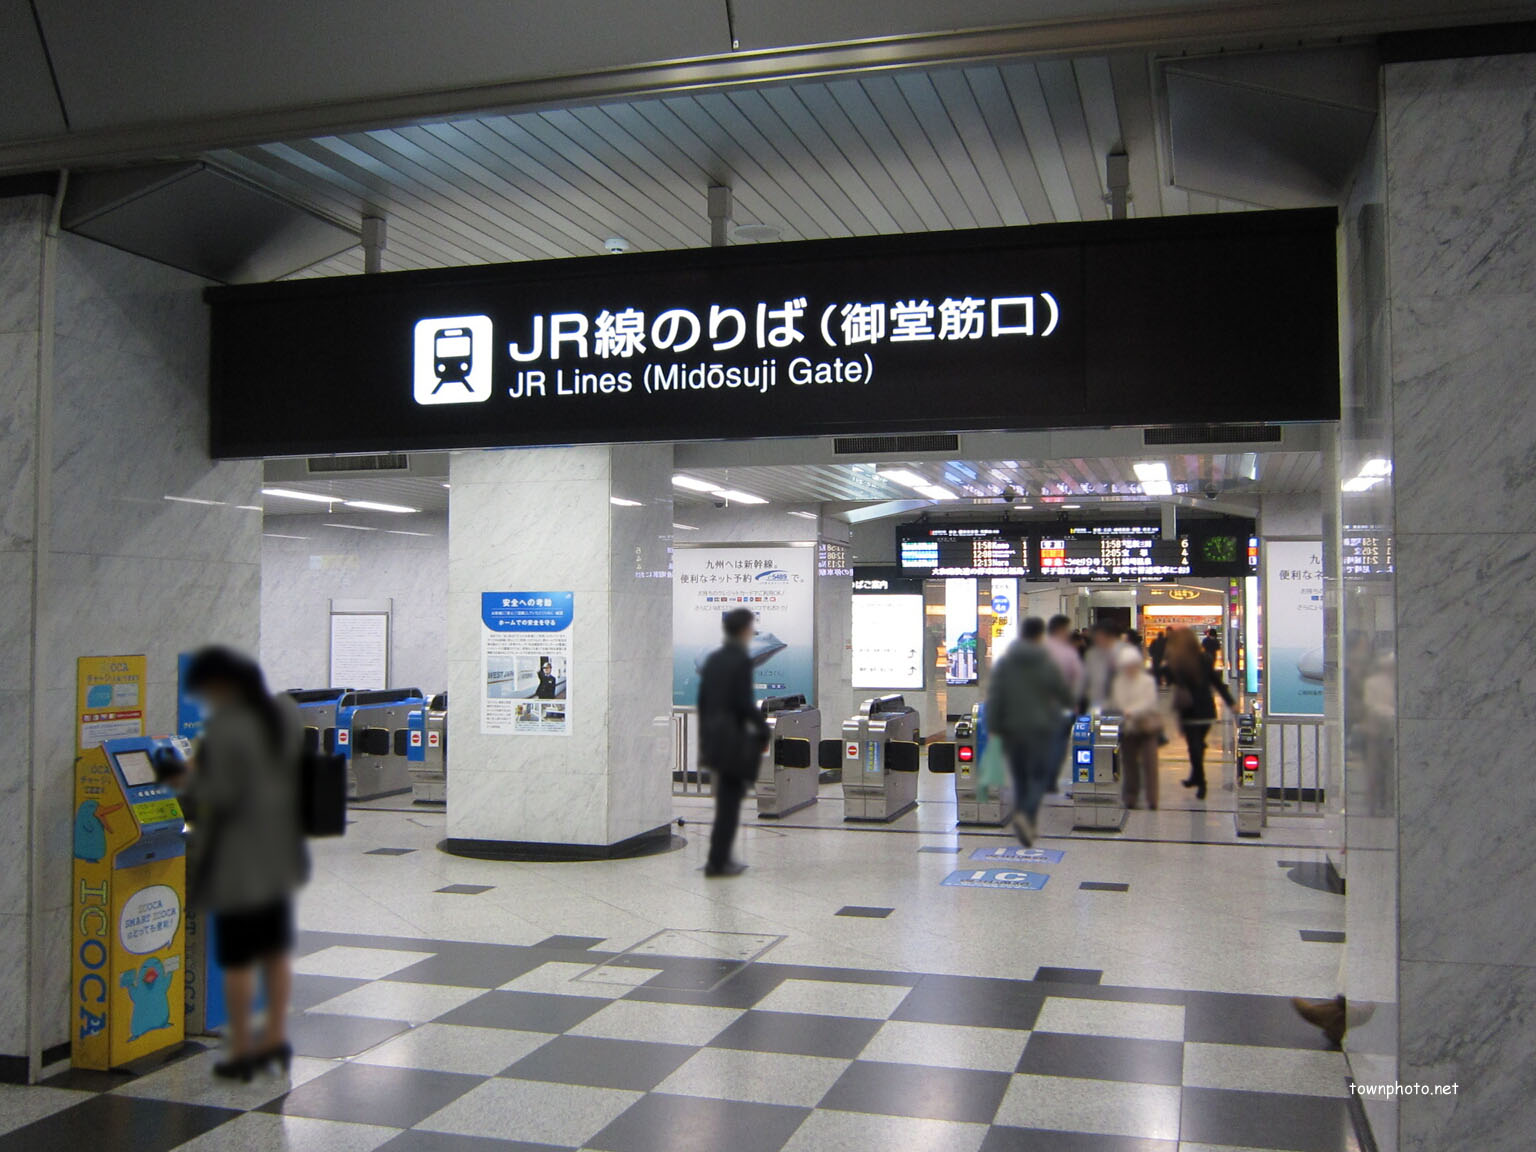 21 30 大阪駅jr高速バスターミナル アトリウム広場 うめきた